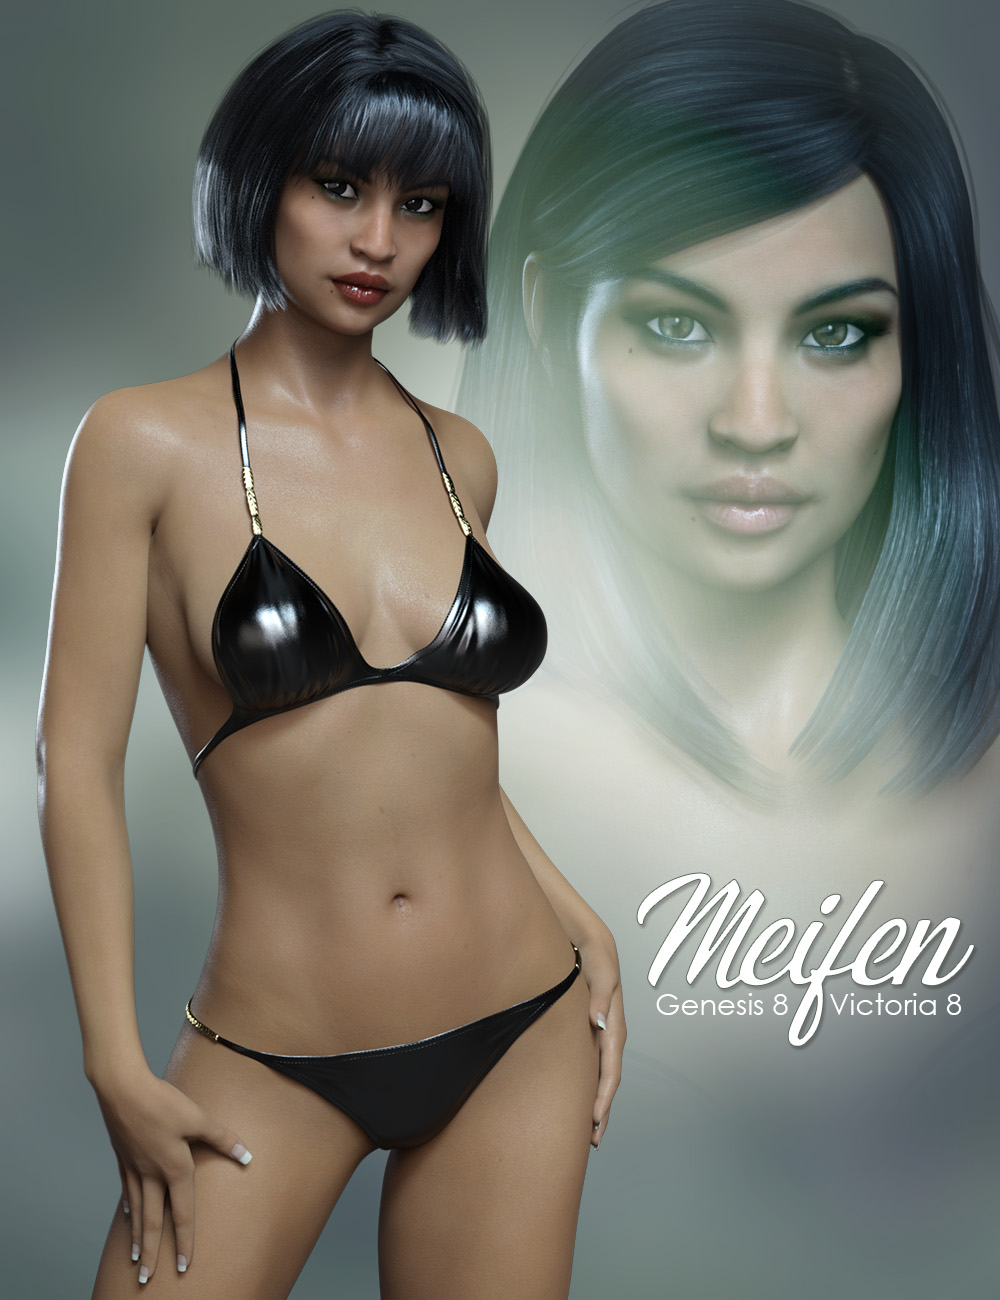 FWSA Meifen HD for Victoria 8 by: Fred Winkler ArtSabby, 3D Models by Daz 3D